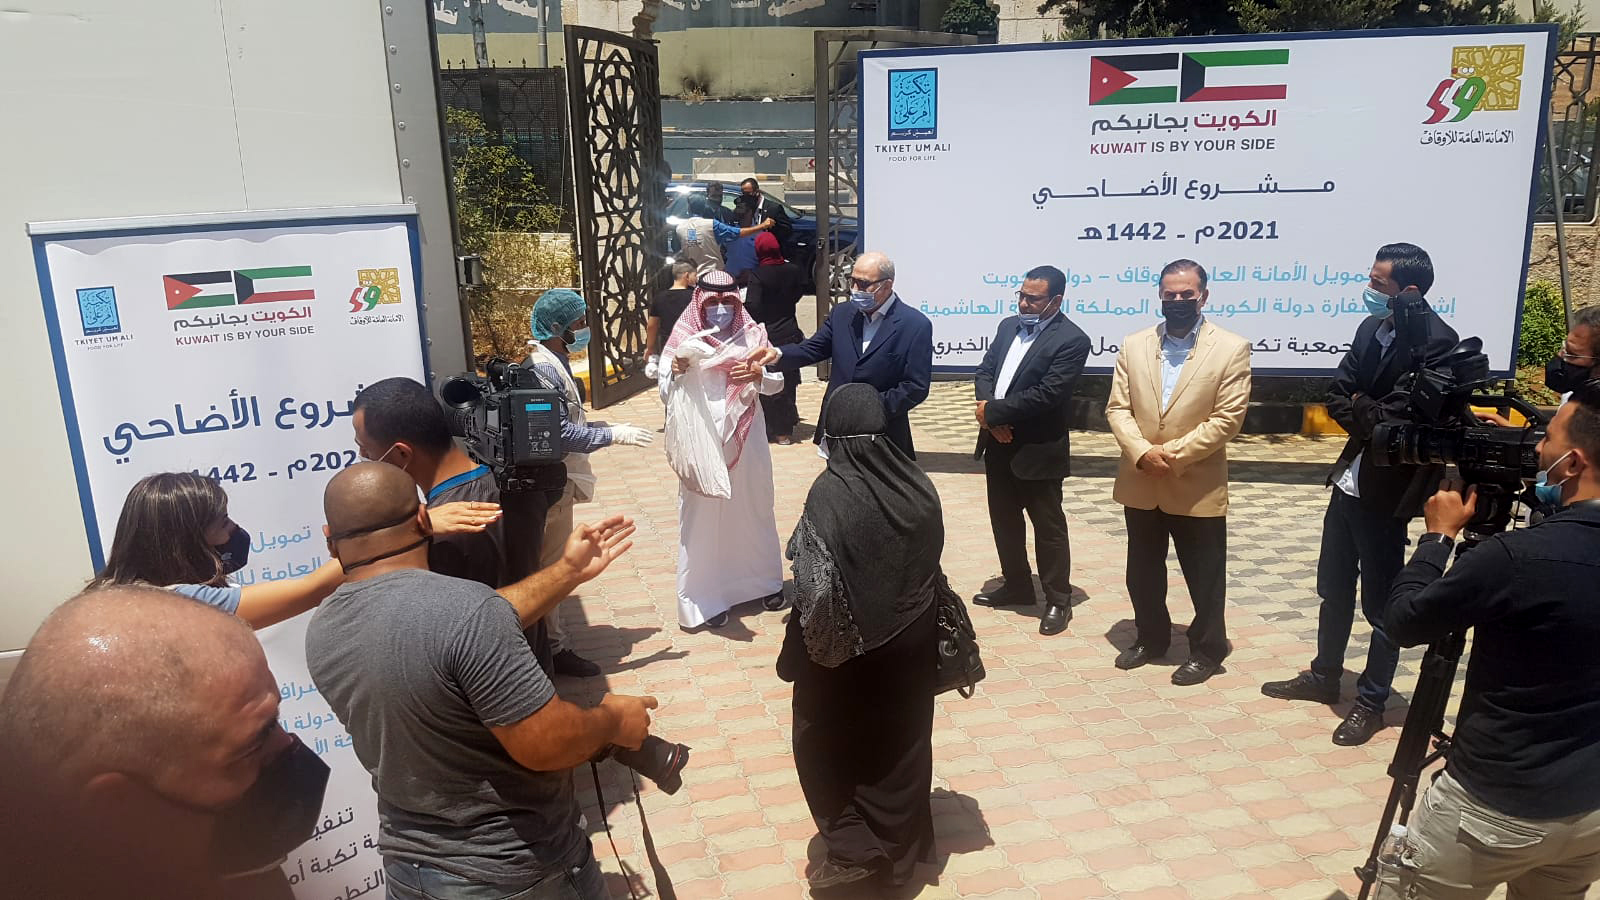 L'opération s'inscrit dans le cadre du projet « Sacrifices 2021 », supervisé par l'ambassade du Koweït à Amman et qui cible les déplacés syriens et les nécessiteux en Jordanie.